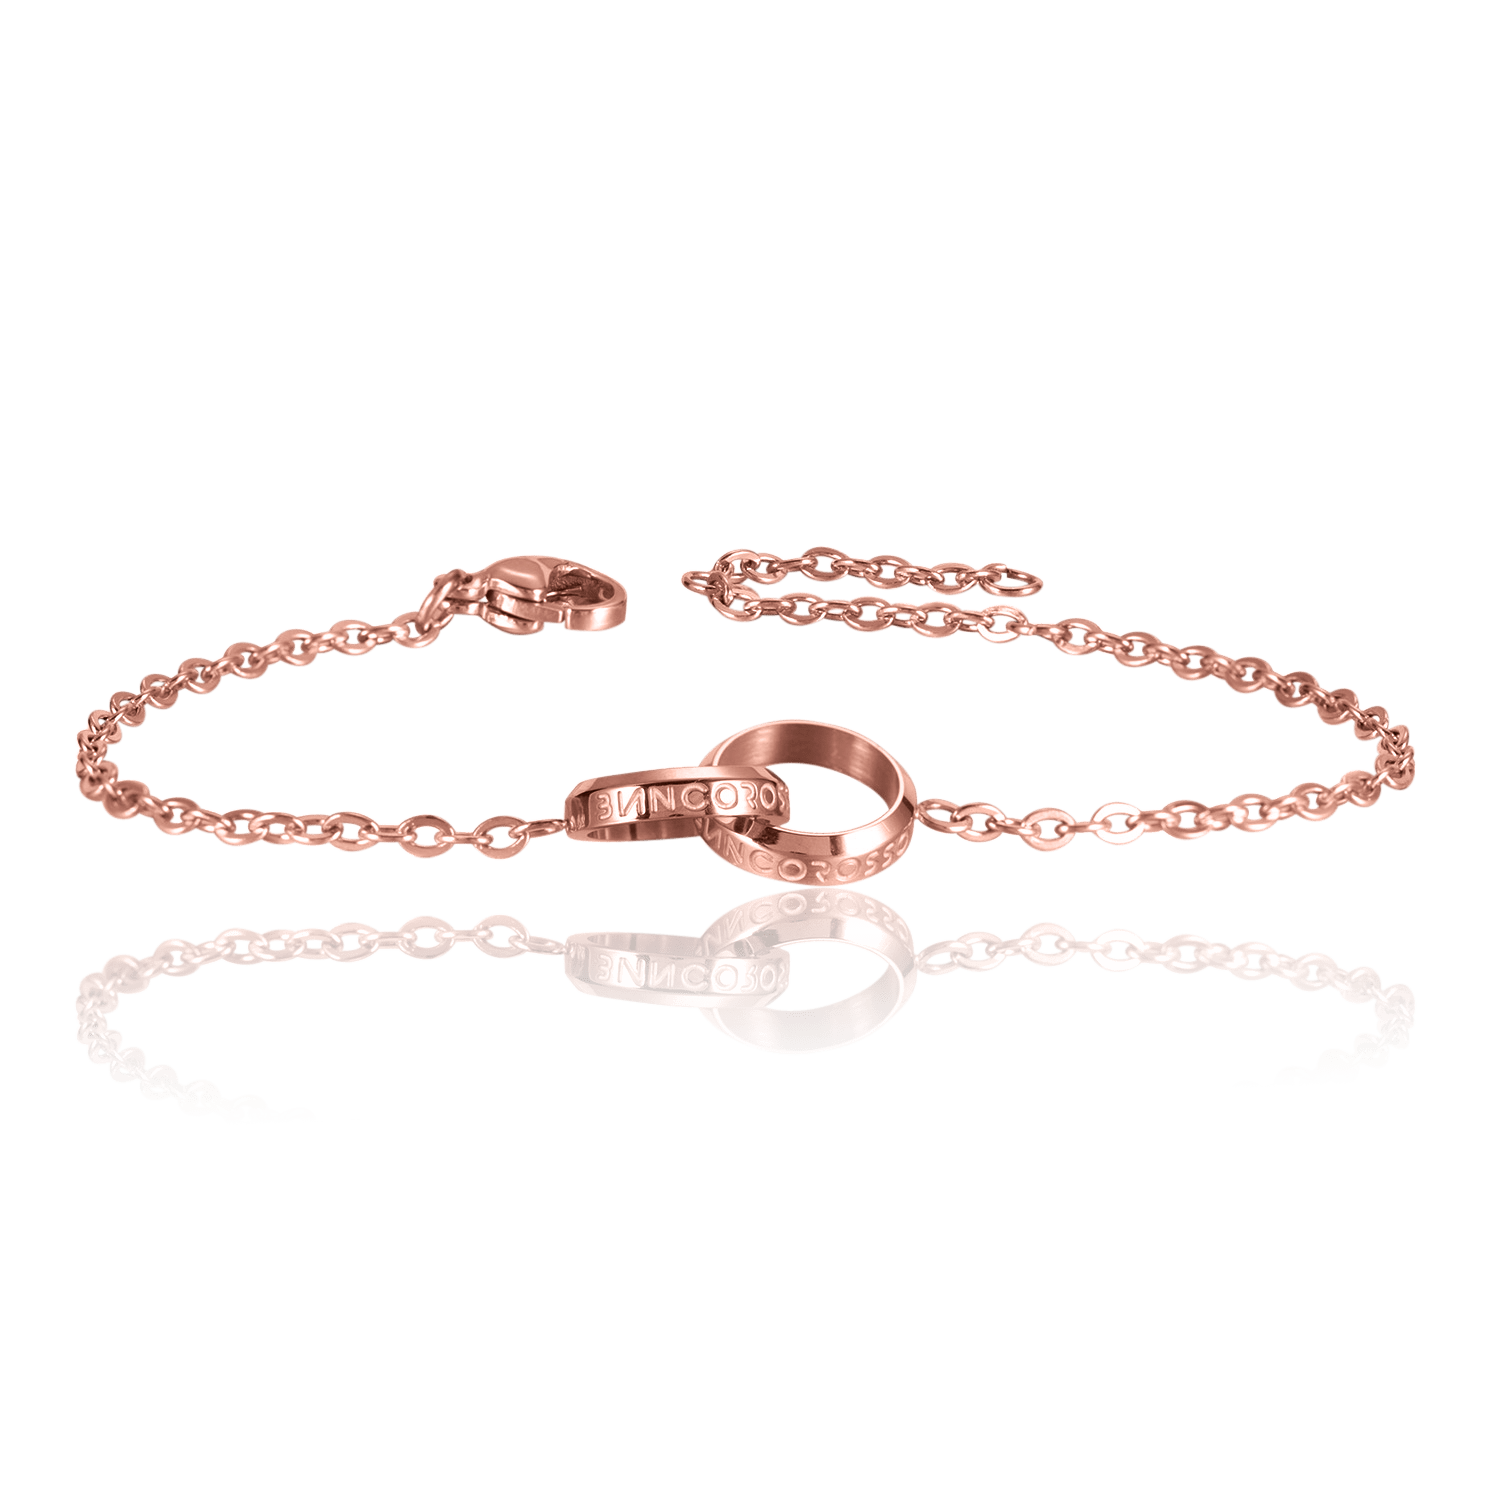 bianco rosso Bracelets To My Nephew - Eternity Bracelet cyprus greece jewelry gift free shipping europe worldwide